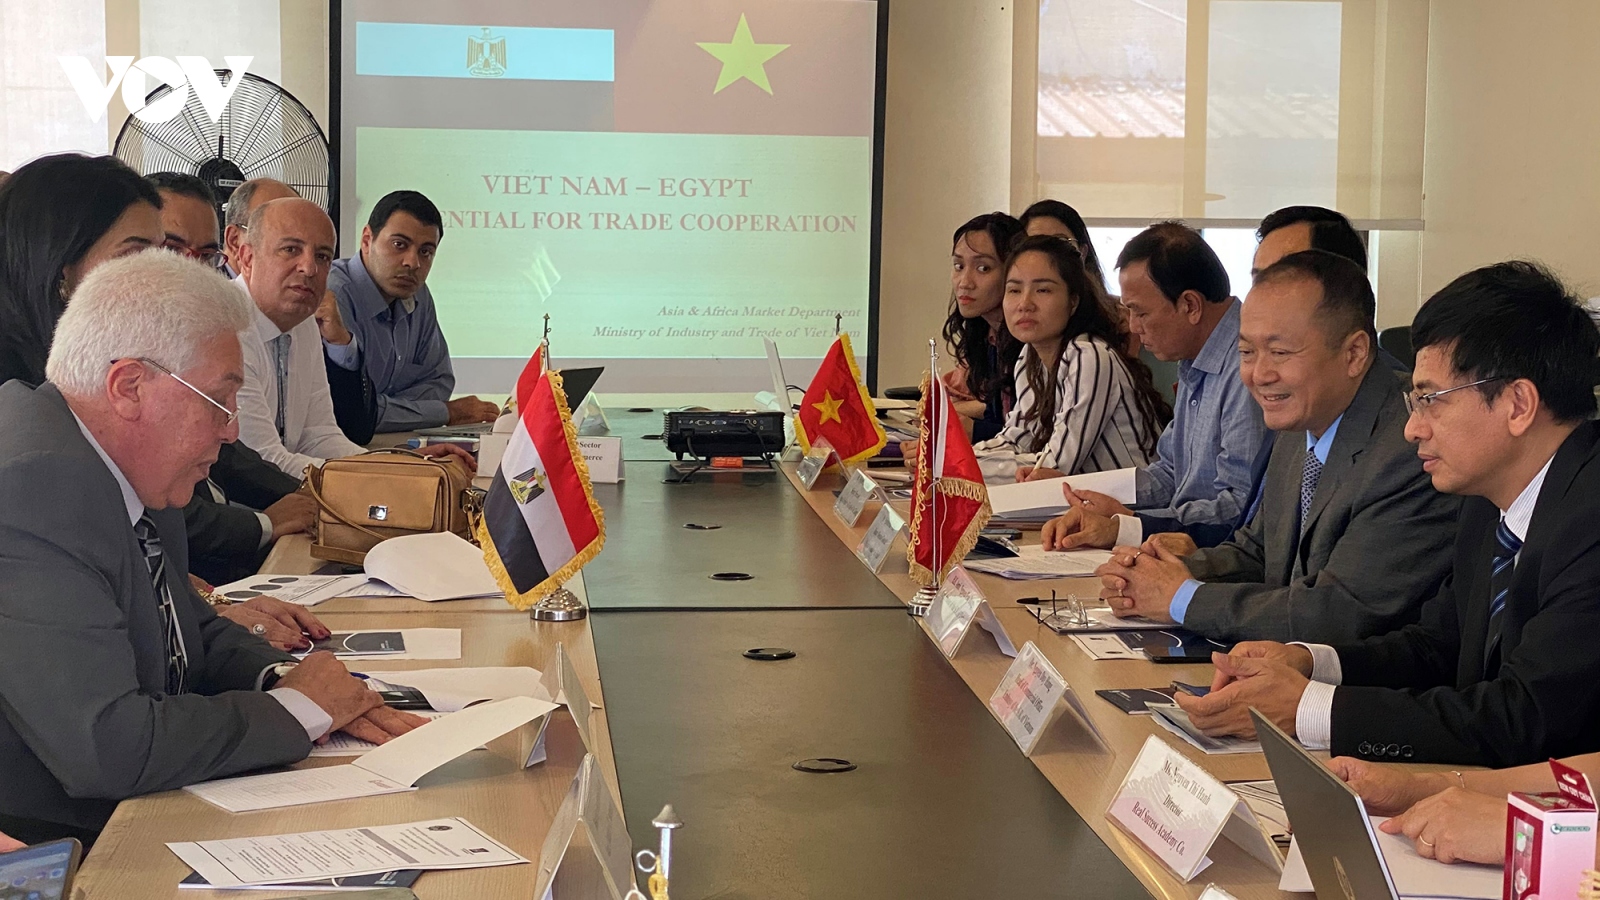 Nhiều cơ hội cho hàng hóa Việt Nam tại thị trường Ai Cập với hơn 100 triệu dân